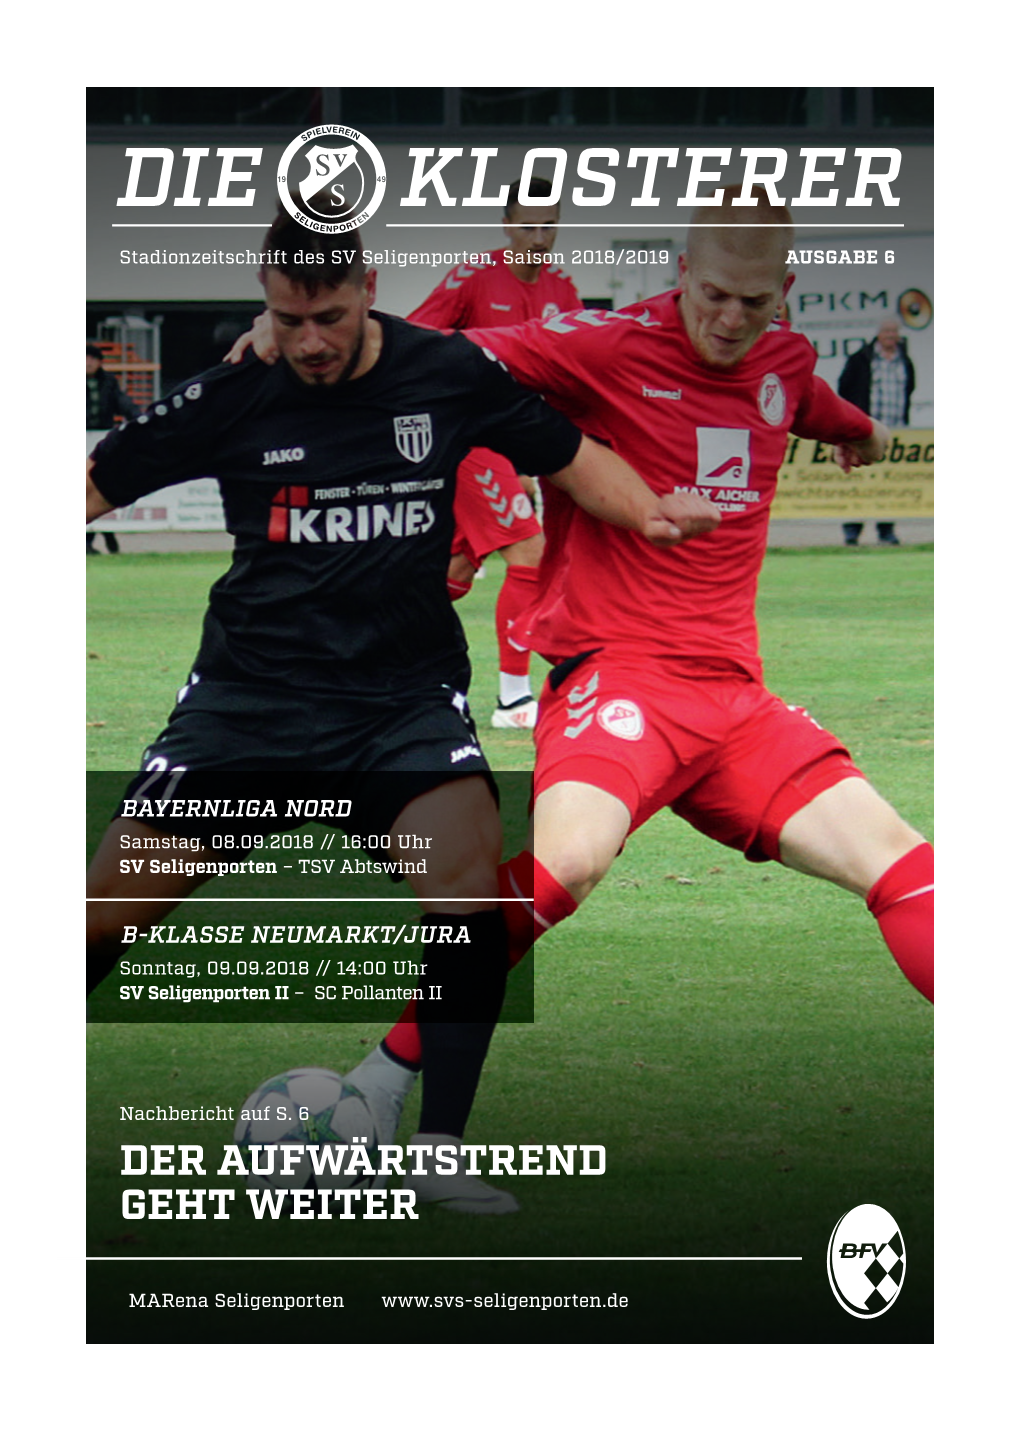 DIE KLOSTERER Stadionzeitschrift Des SV Seligenporten, Saison 2018/2019 AUSGABE 6